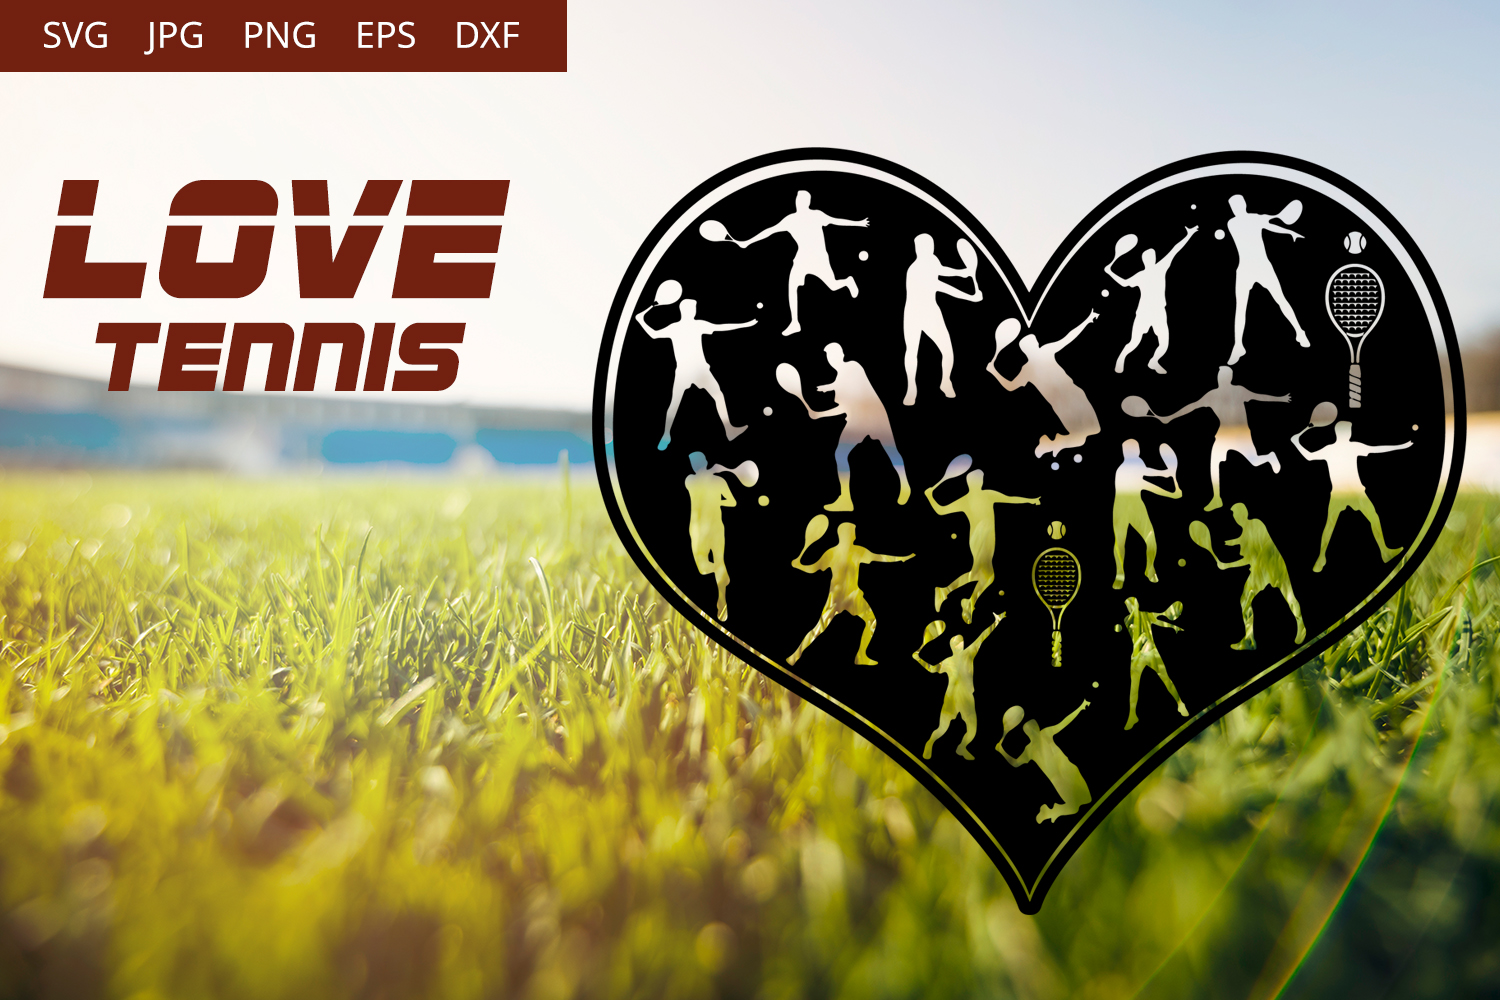 Download Love Tennis - Men SVG Vector (359909) | Illustrations | Design Bundles